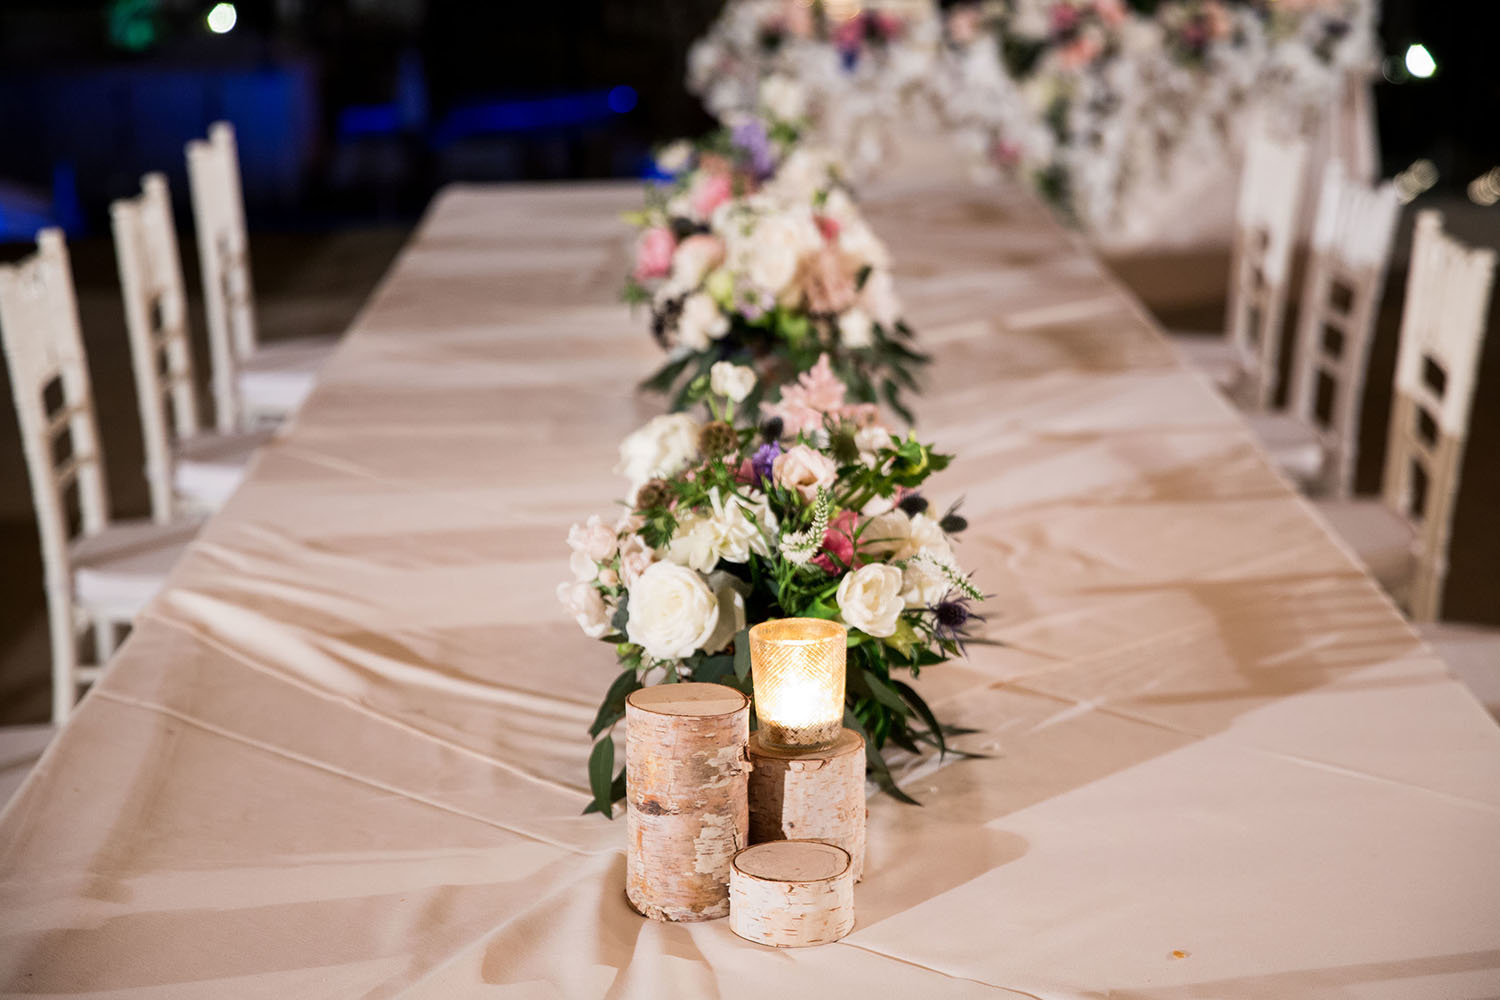 Floral centerpieces at a wedding reception in Del Mar